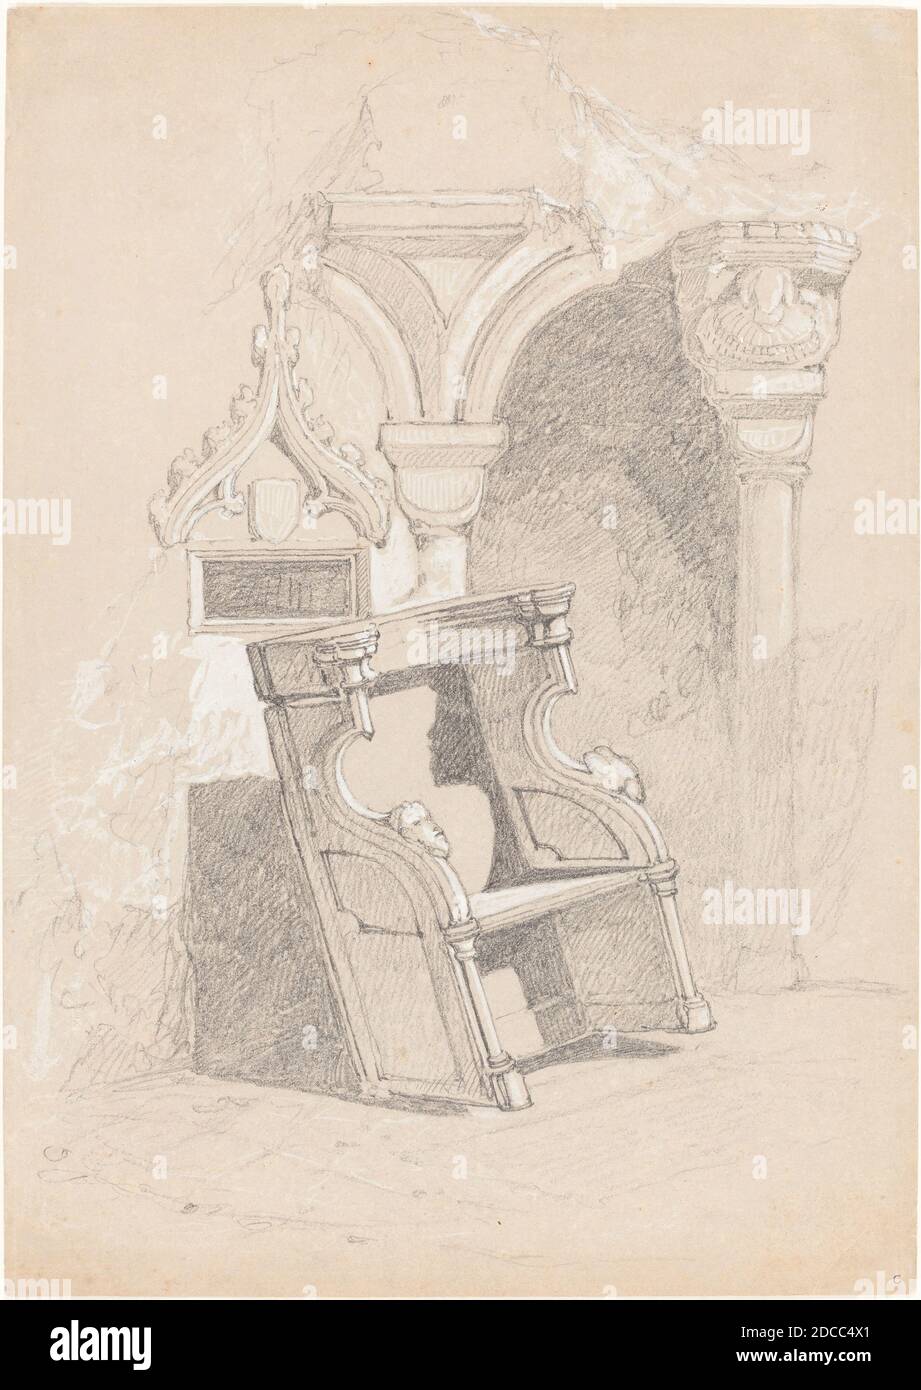 John Sell Cotman, (artiste), British, 1782 - 1842, esquisse de l'intérieur de l'église en ruines avec chaise, graphite rehaussé de blanc sur papier gris, total: 33.2 x 23.5 cm (13 1/16 x 9 1/4 po Banque D'Images